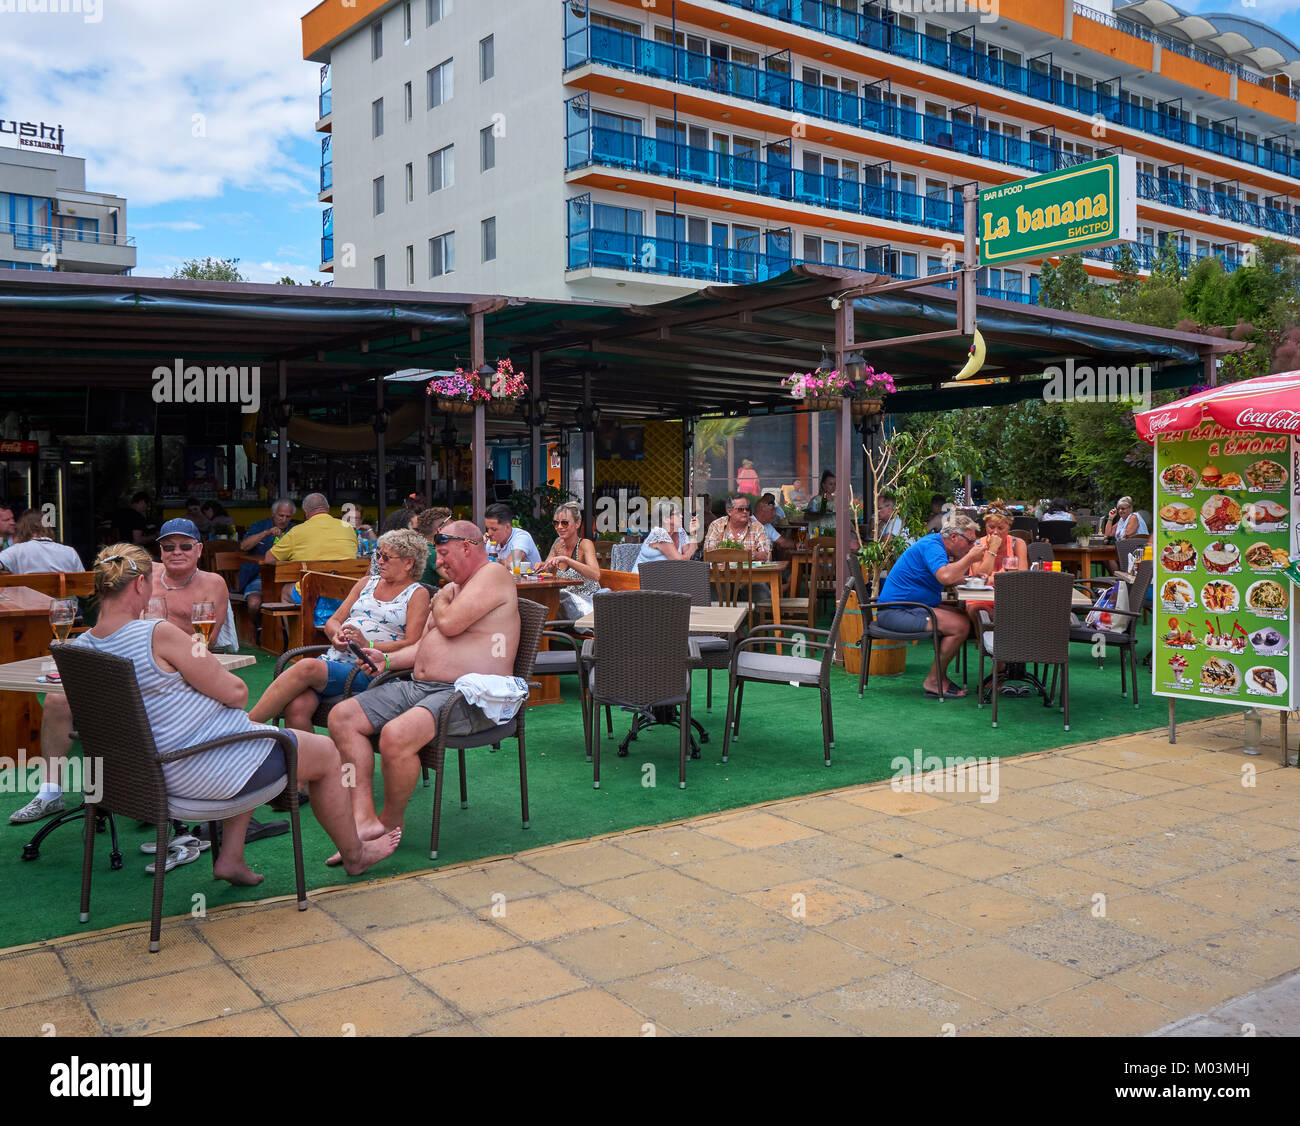 Sunny Beach resort, Bulgaria Stock Photo